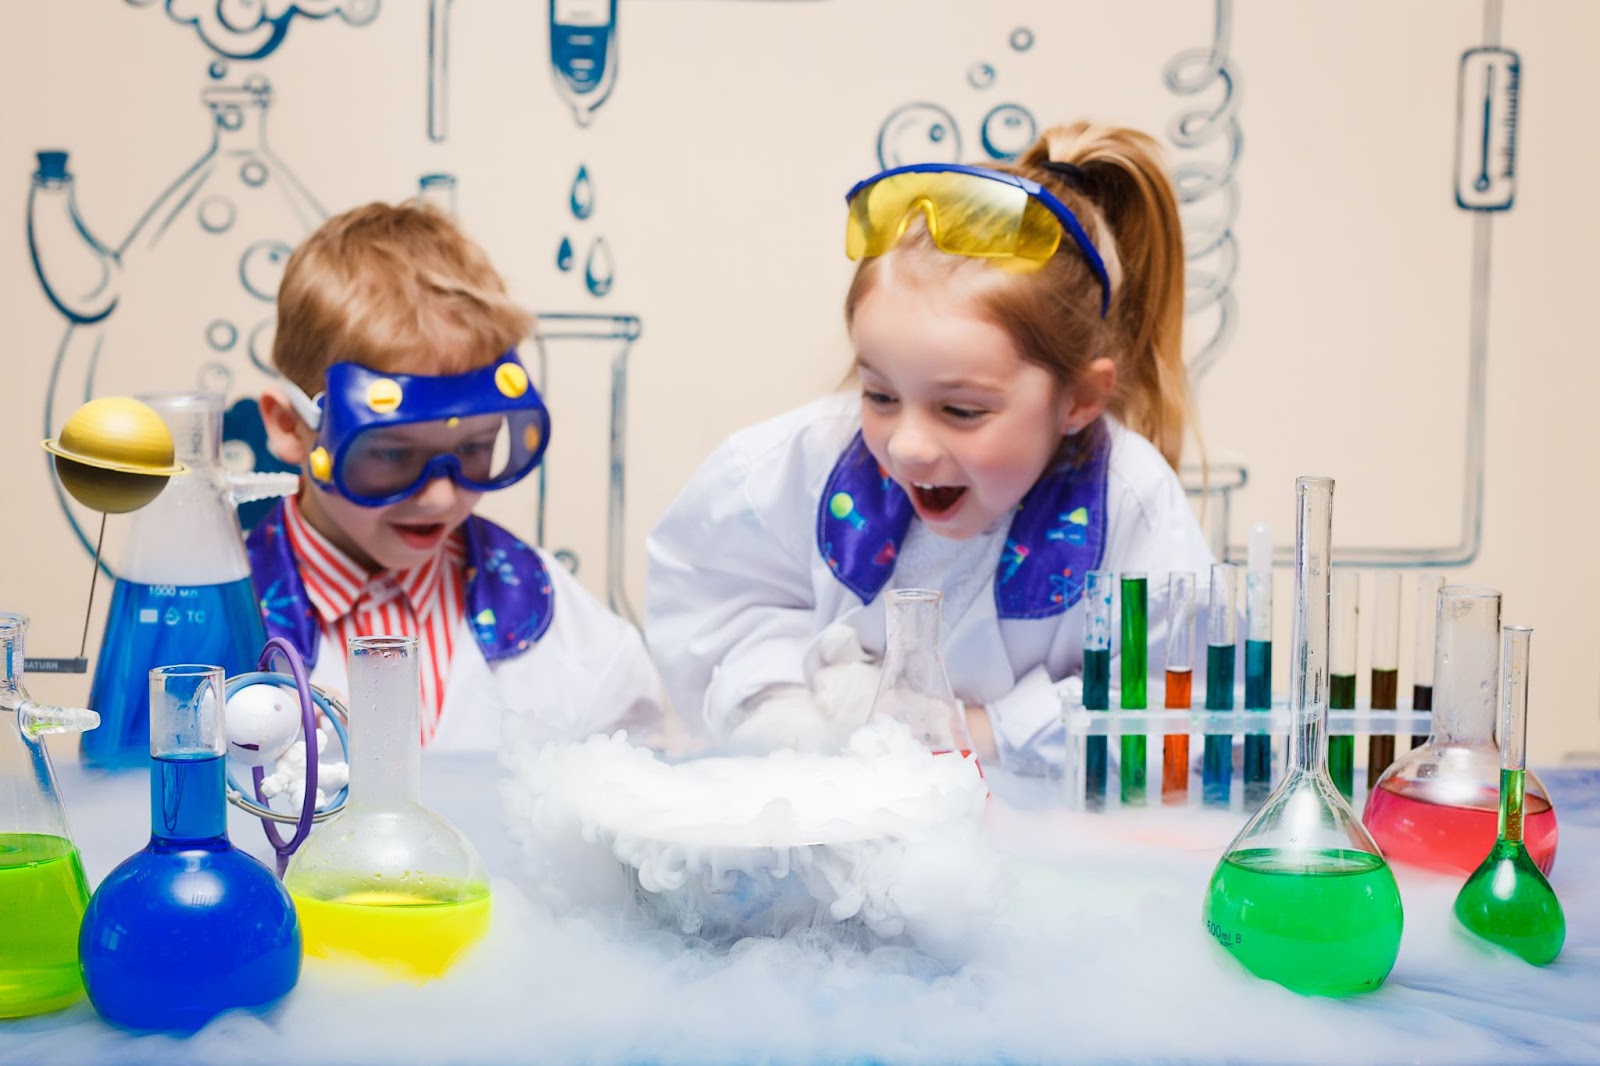 Einfache wissenschaftliche Experimente für Kinder zur Förderung der Kreativität